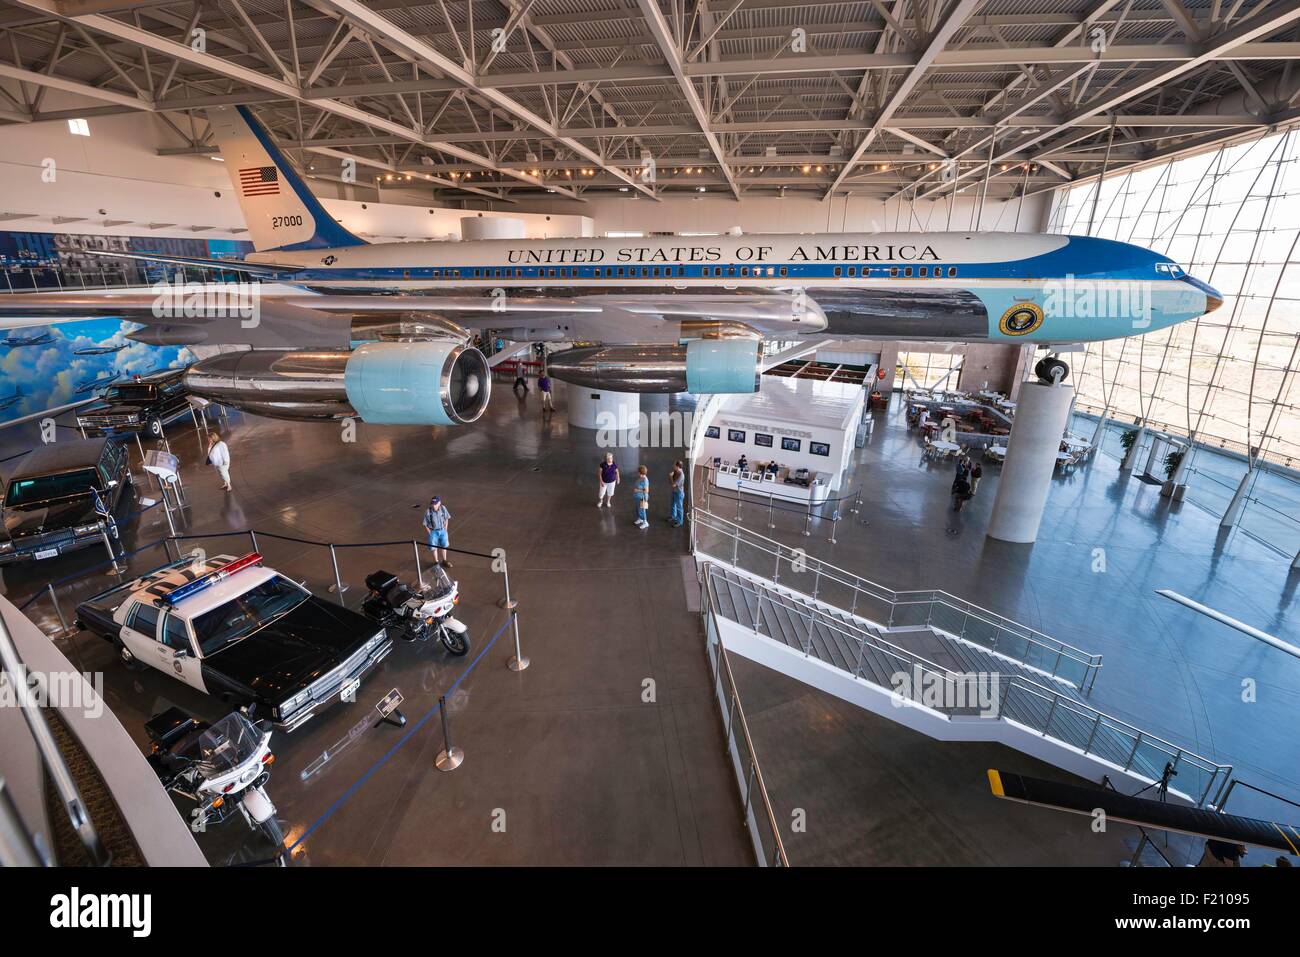 USA, California, Simi Valley, der Ronald Reagan presidential Library und Museum, Ausstellung mit der Boeing 707 Airforce One verwendet von amerikanischen Präsidenten von 1973 bis 2001 Stockfoto